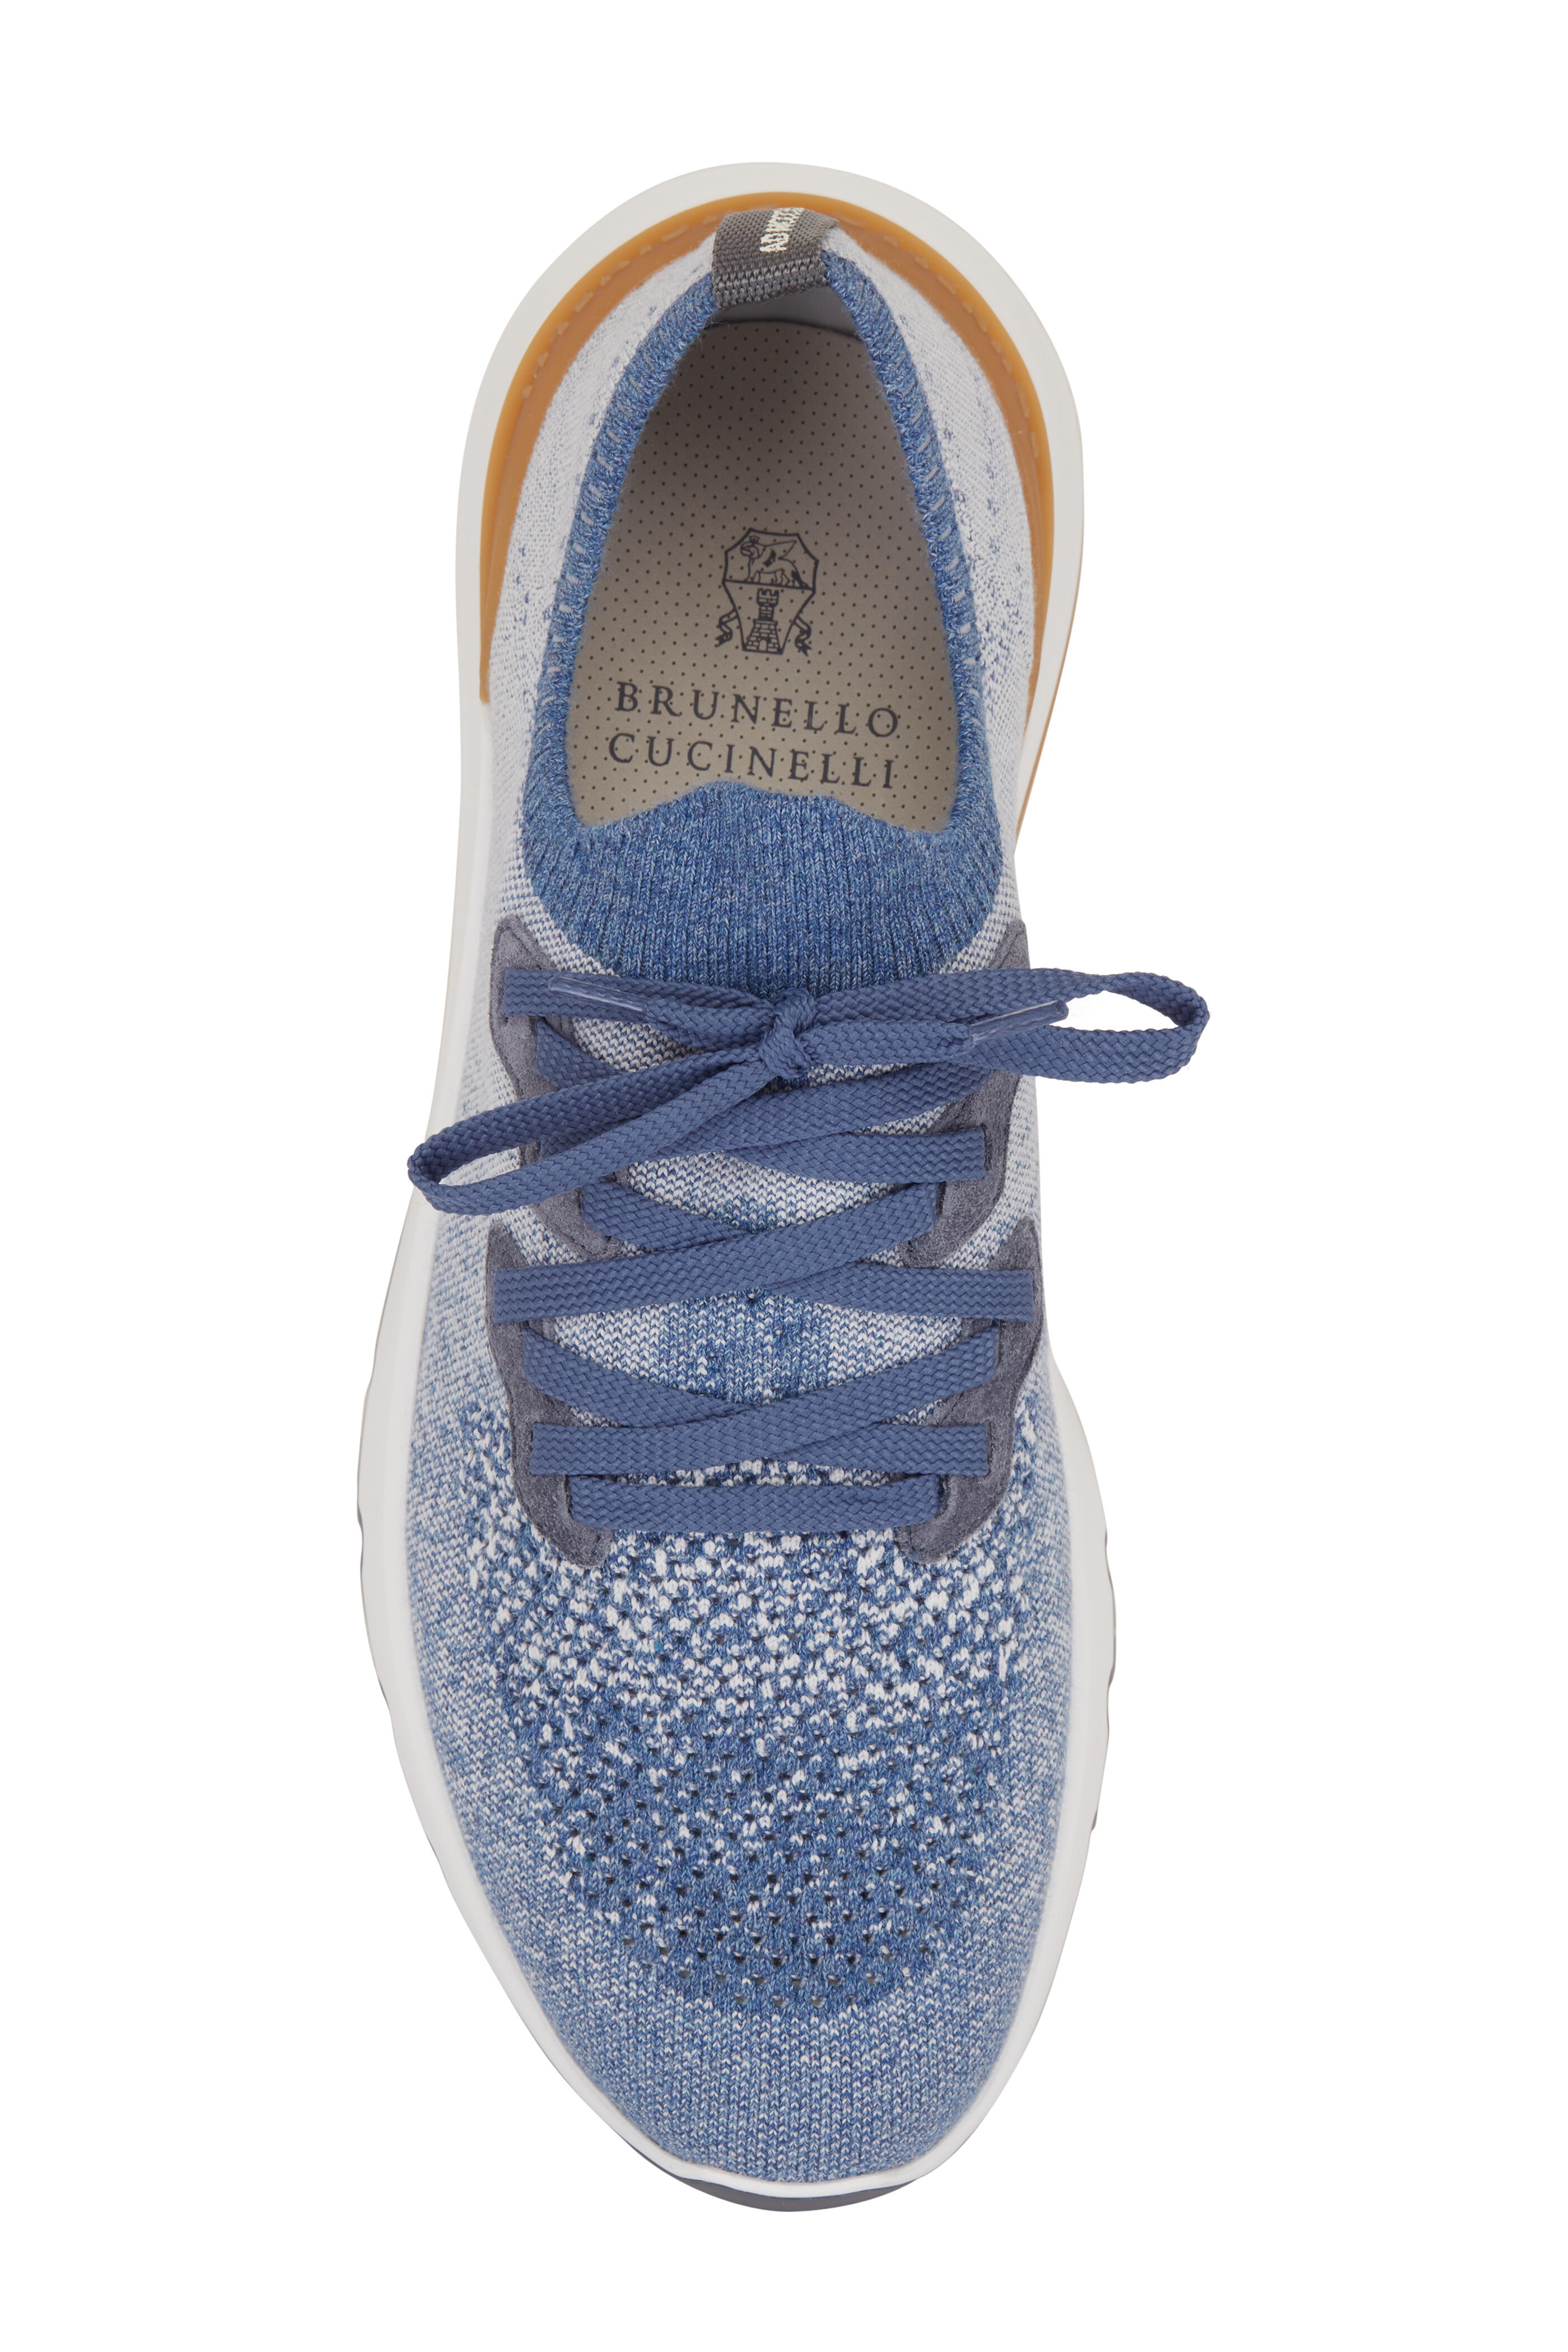 Brunello Cucinelli - Denim Knit Sneaker | Mitchell Stores